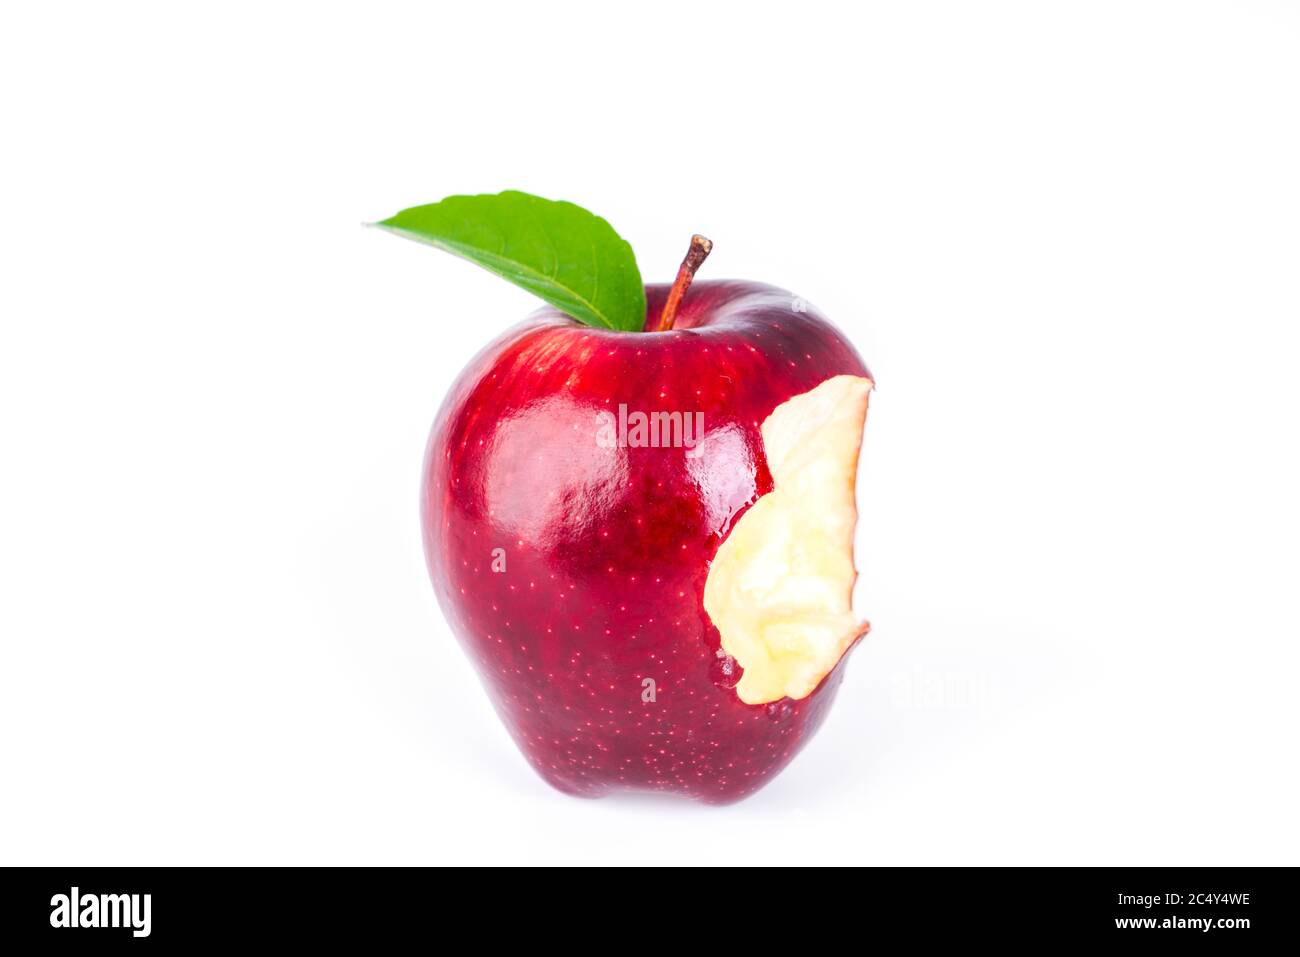 Roter Apfel mit grünem Blatt und einen Biss fehlt Stockfoto